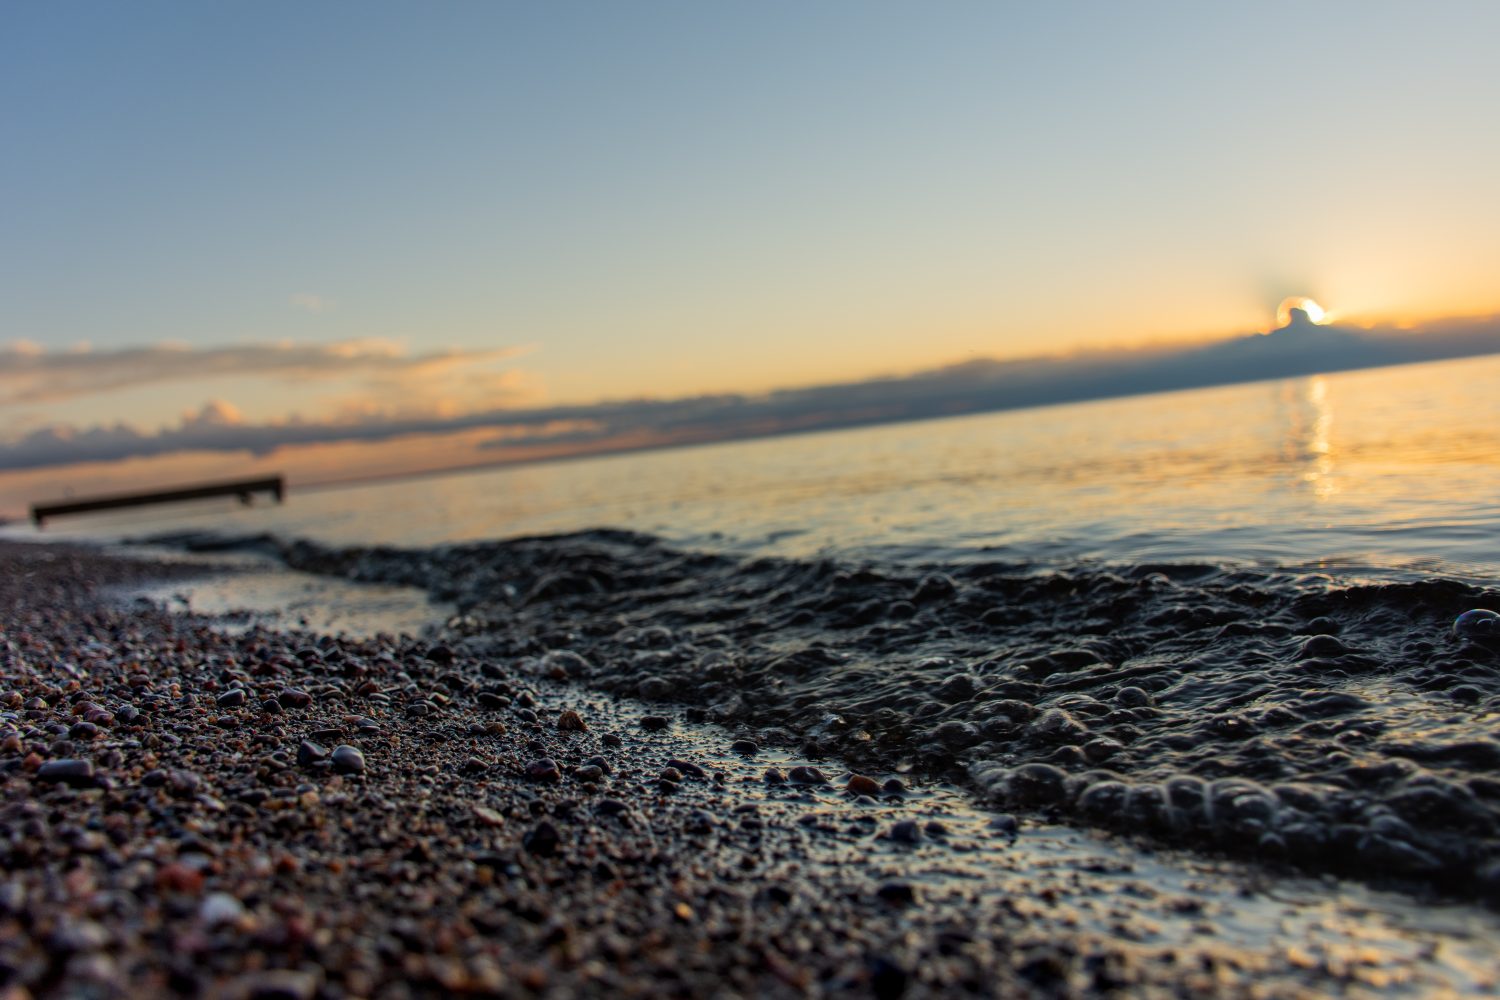 Primo piano su rocce di sabbia e piccole onde con messa a fuoco morbida sul molo di legno e sole nascente che penetra attraverso nuvole scure sopra l'orizzonte e il lago Saint-Jean, Quebec, Canada, in una calda mattina estiva